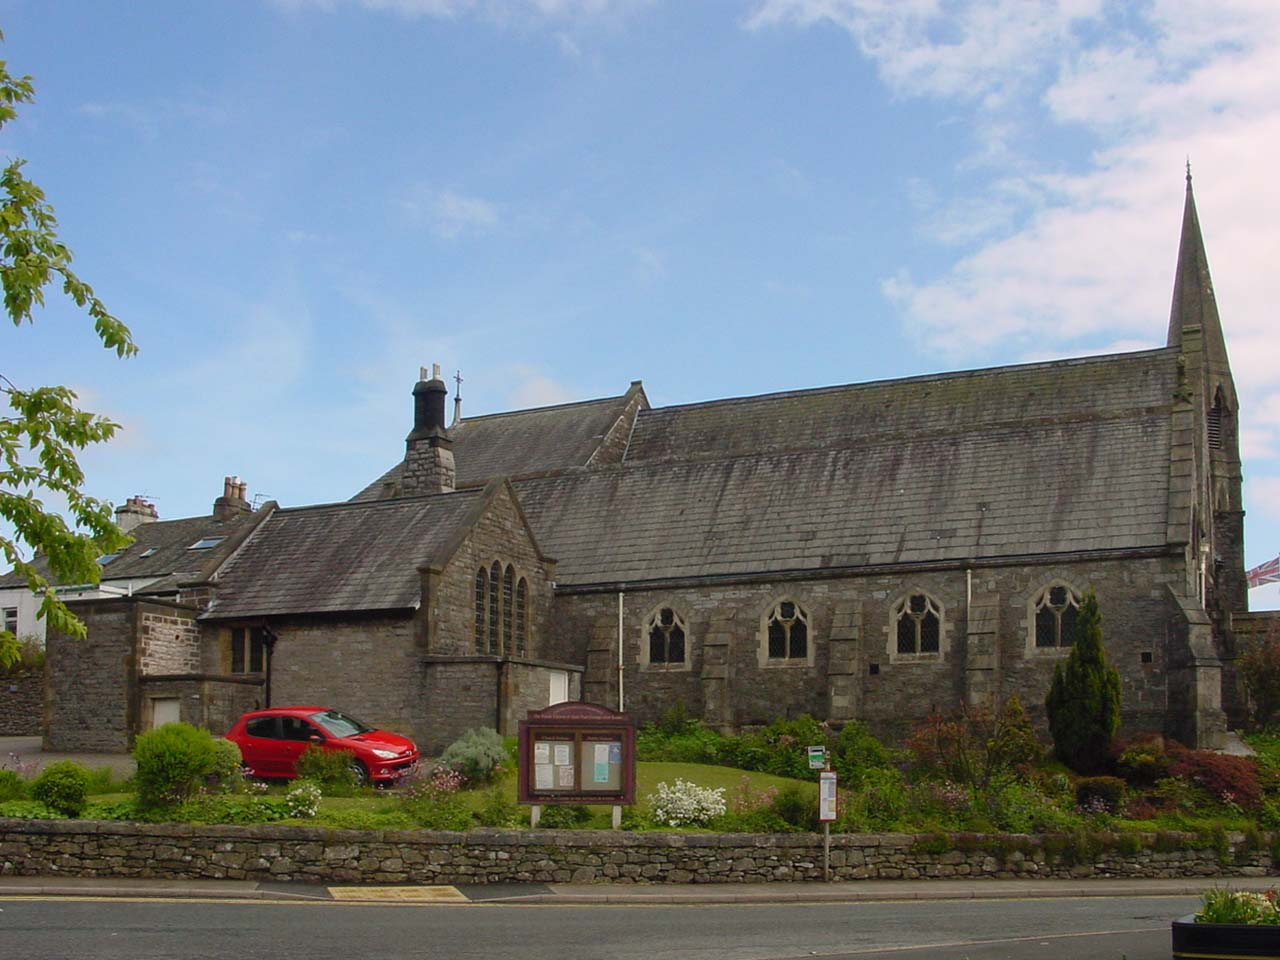 The Parish Church of St Paul